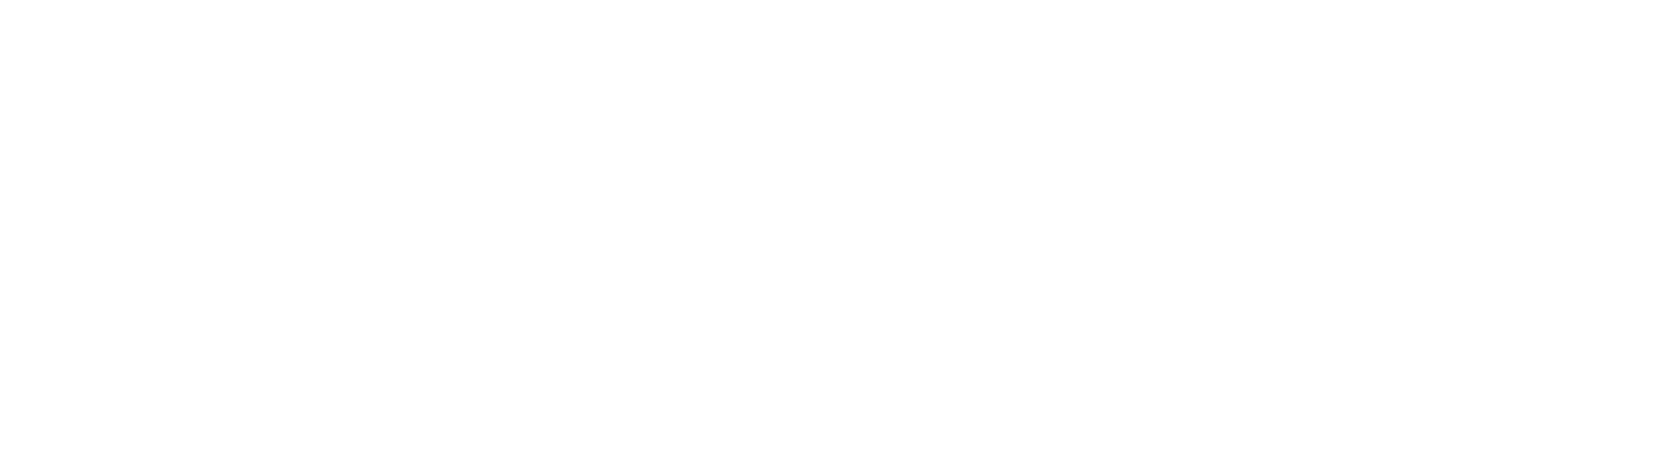 logo de l'unapei couleur blanc